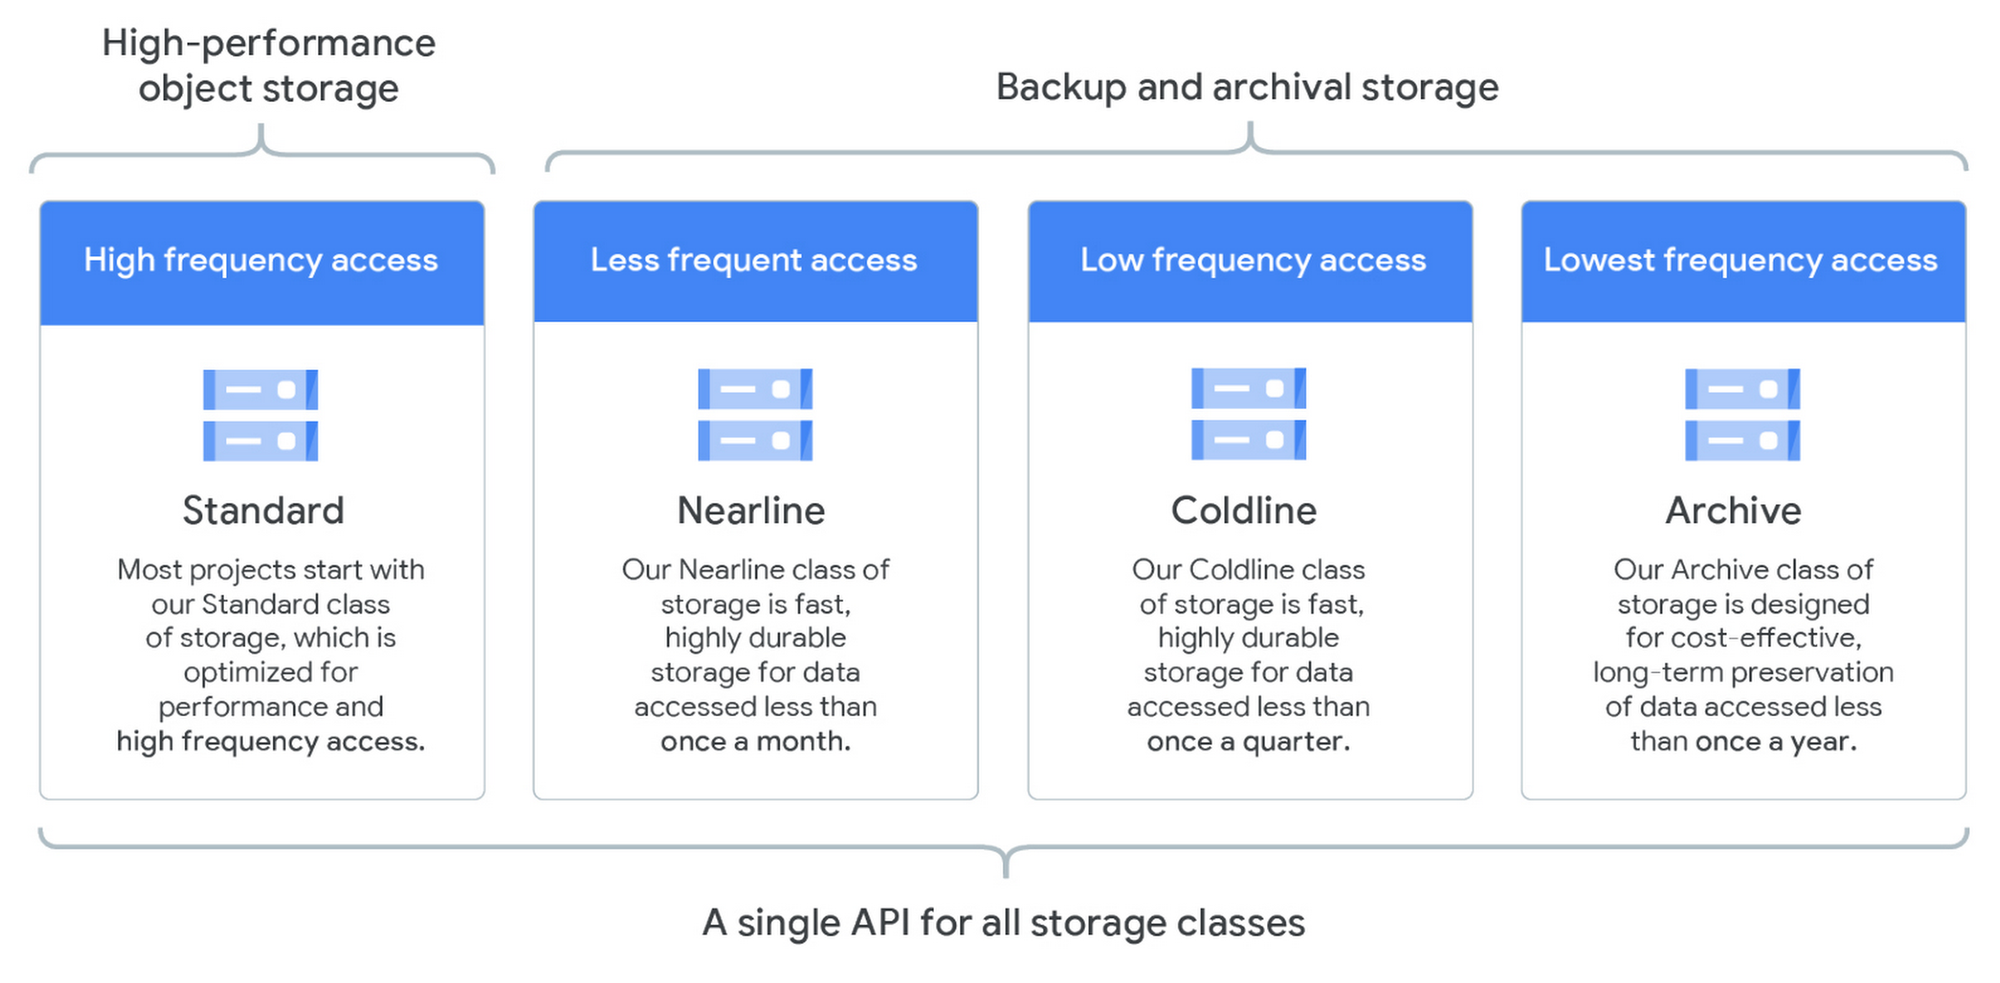 google cloud storage free trial